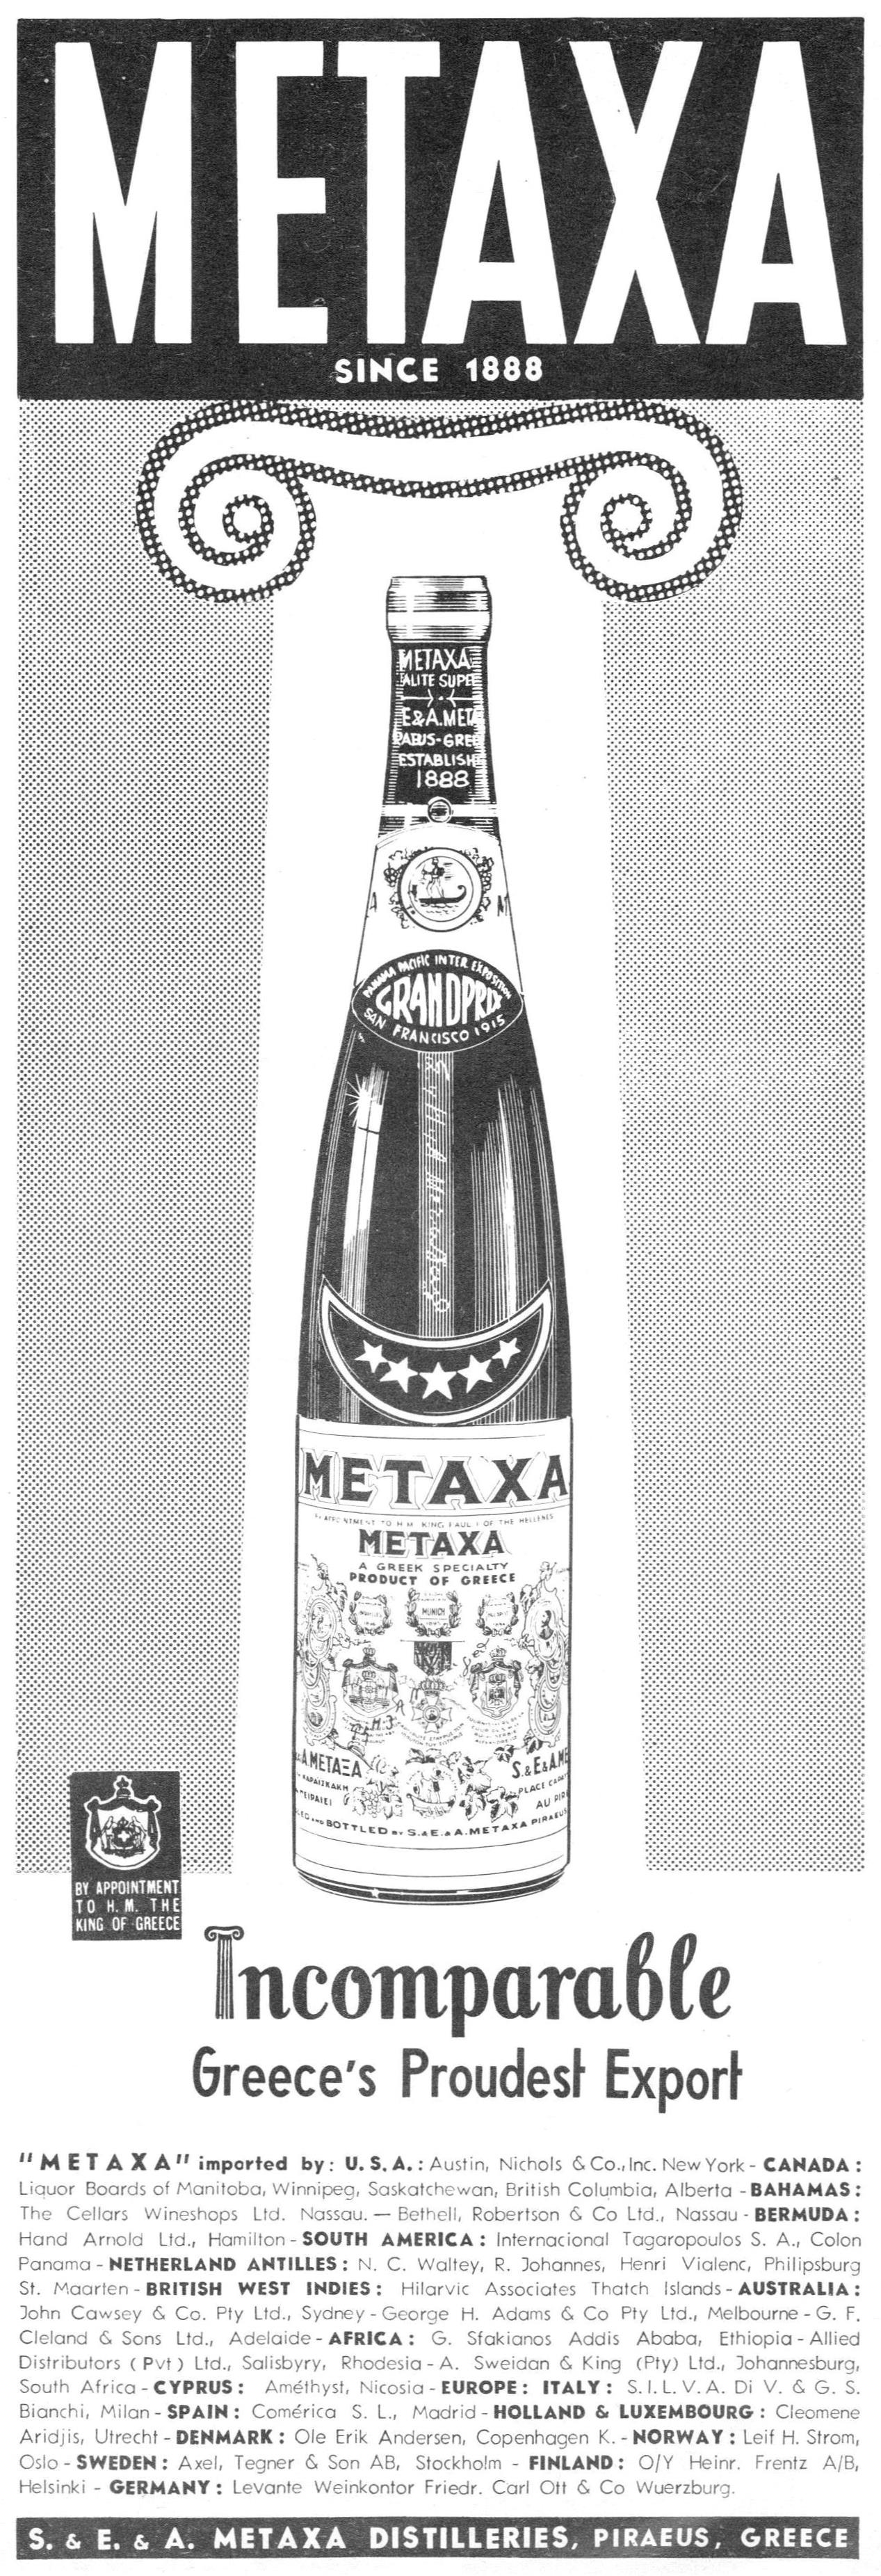 Metaxt 1963 0.jpg